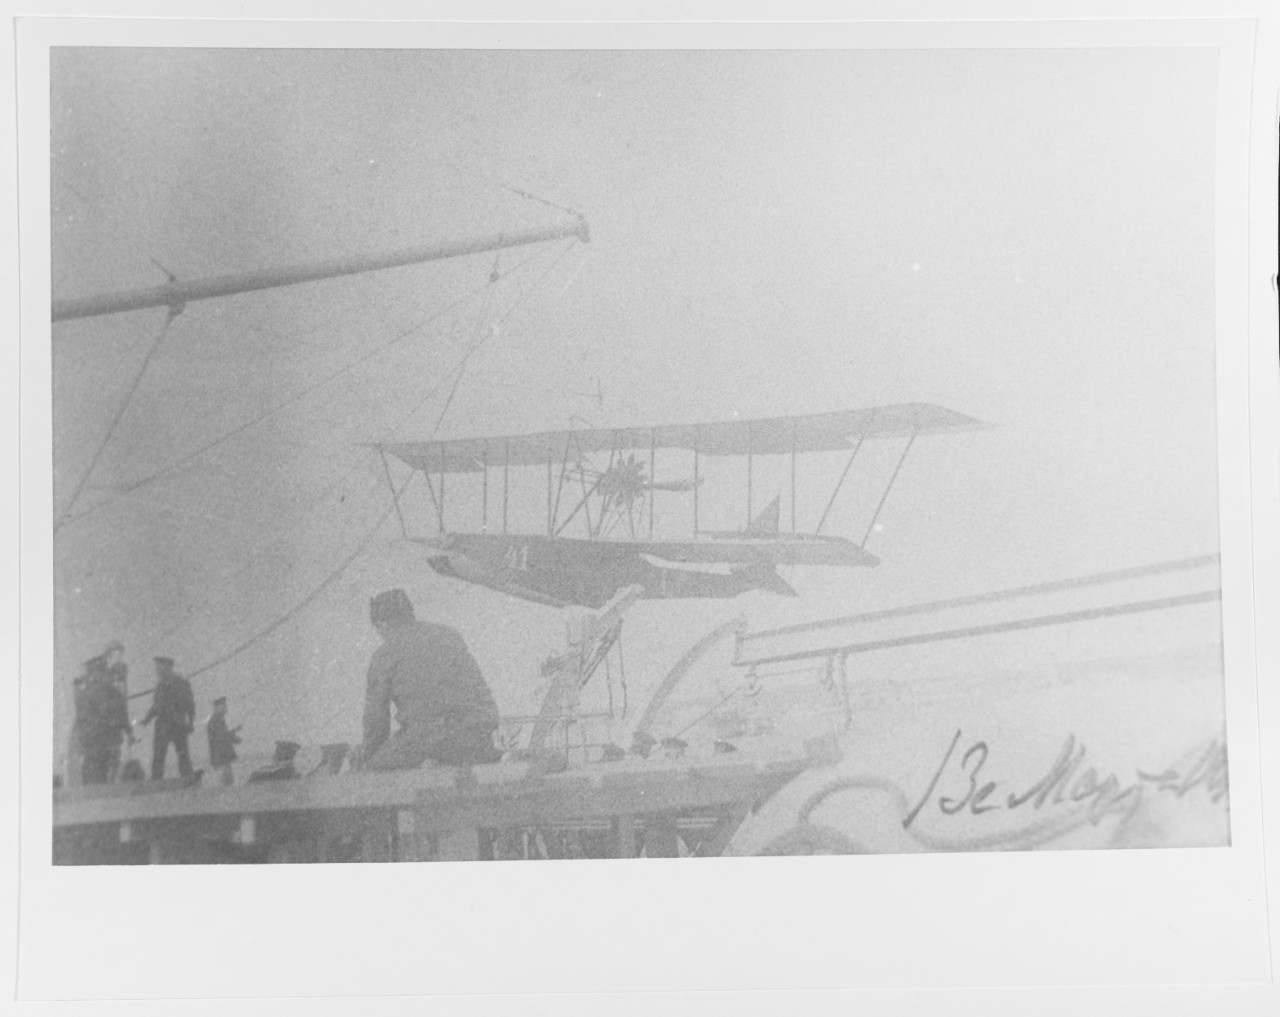 Russian Grigorovich M-5 type flying boat aboard cruiser ALMAZ in 1916.